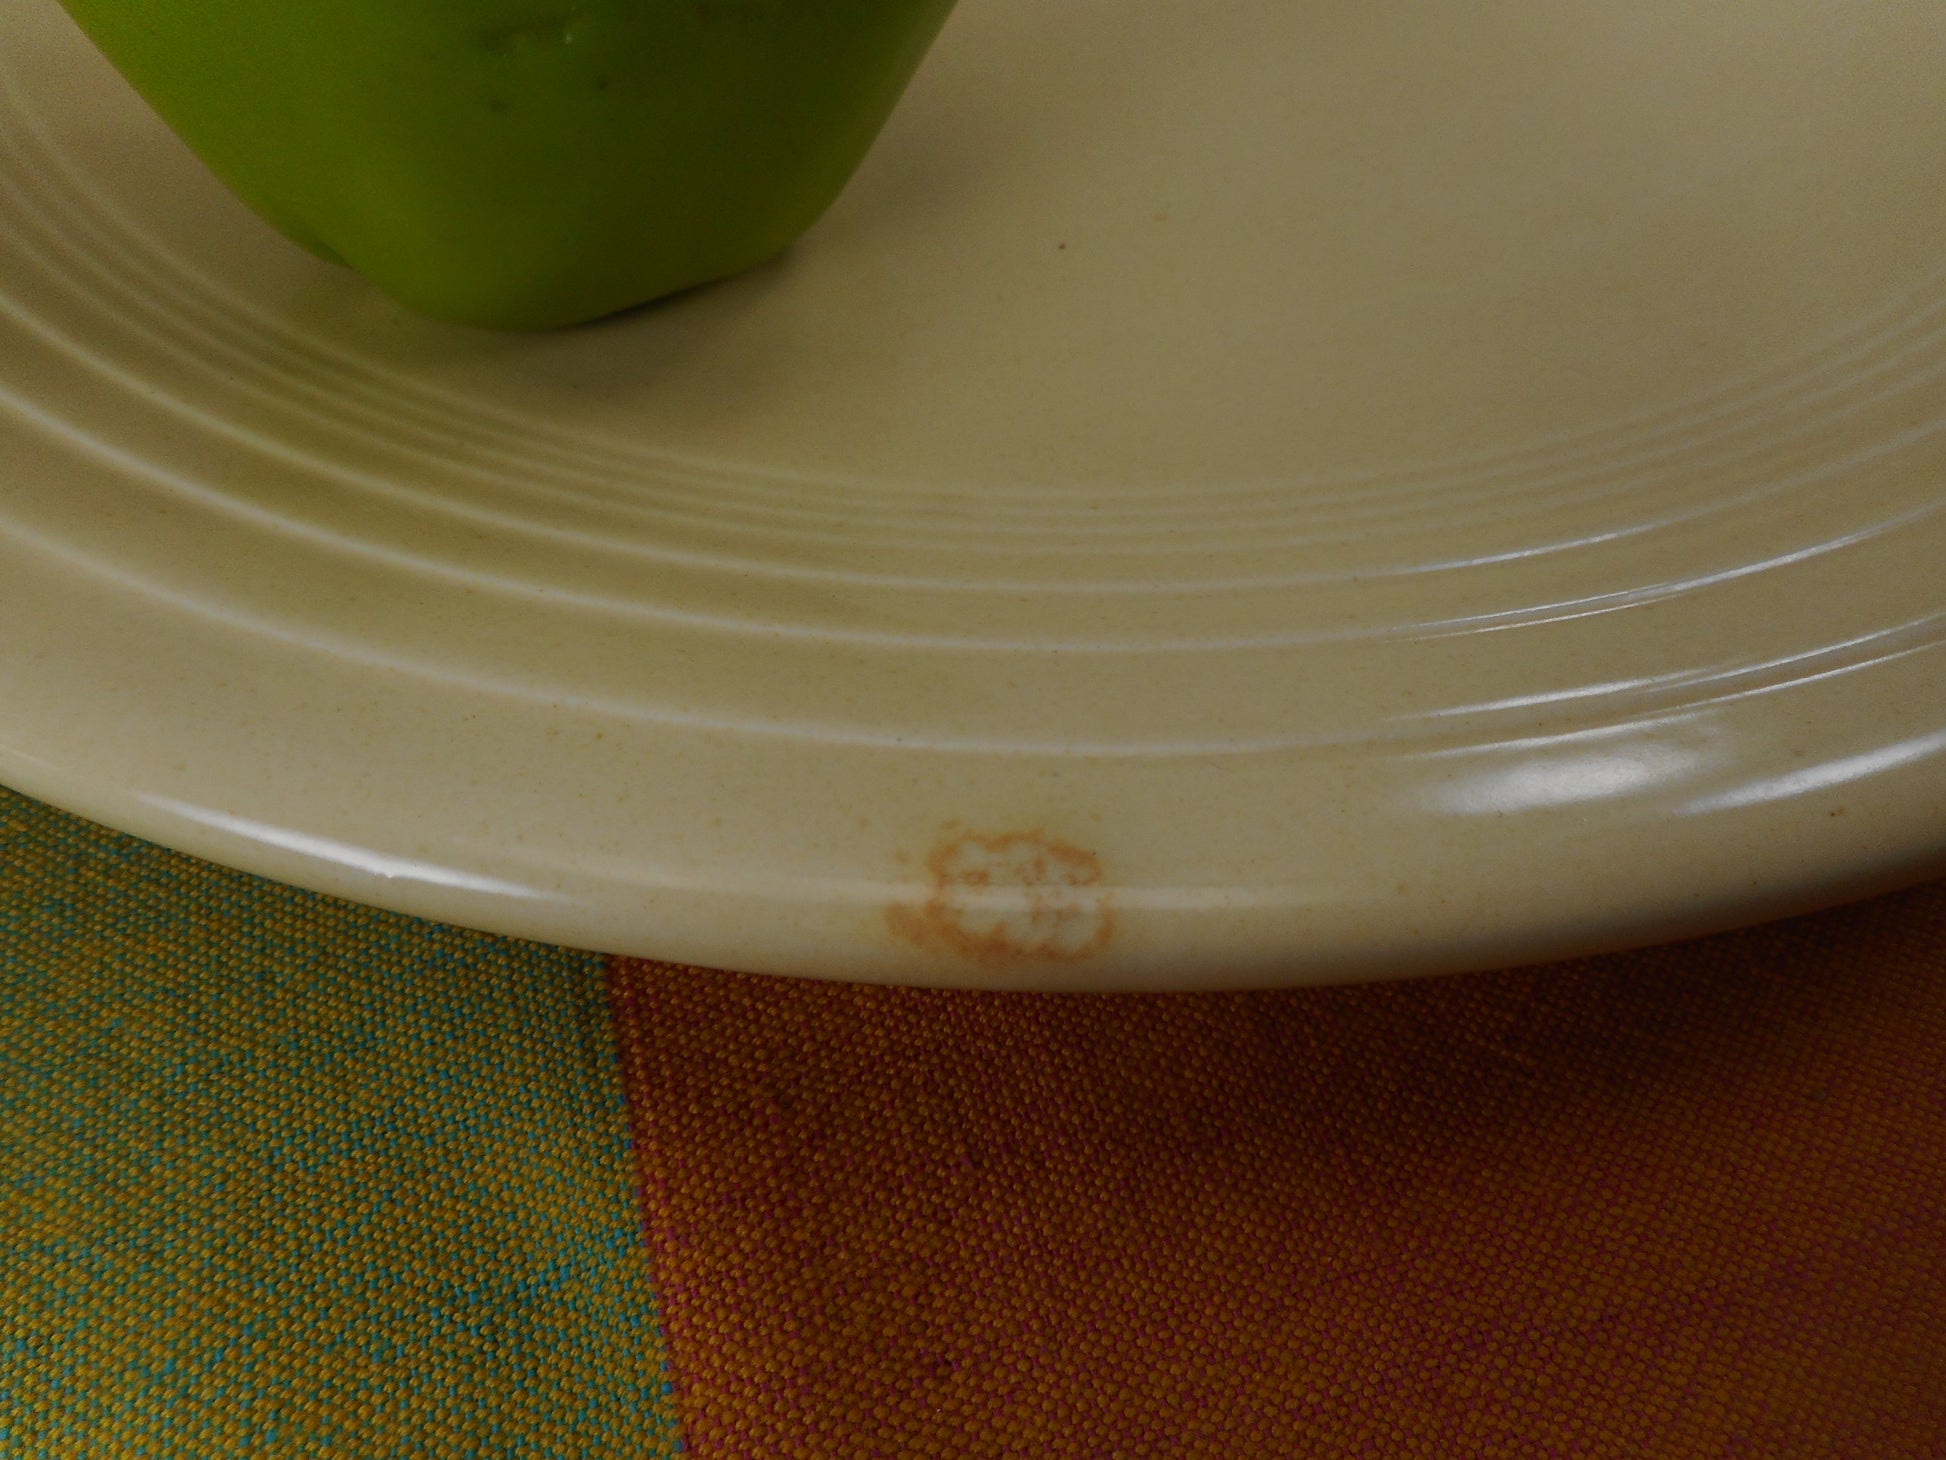 Fiestaware Genuine Vintage 14" Chop Plate Round Platter - Ivory with Orange Splatter Factory Splotch Mis-fire